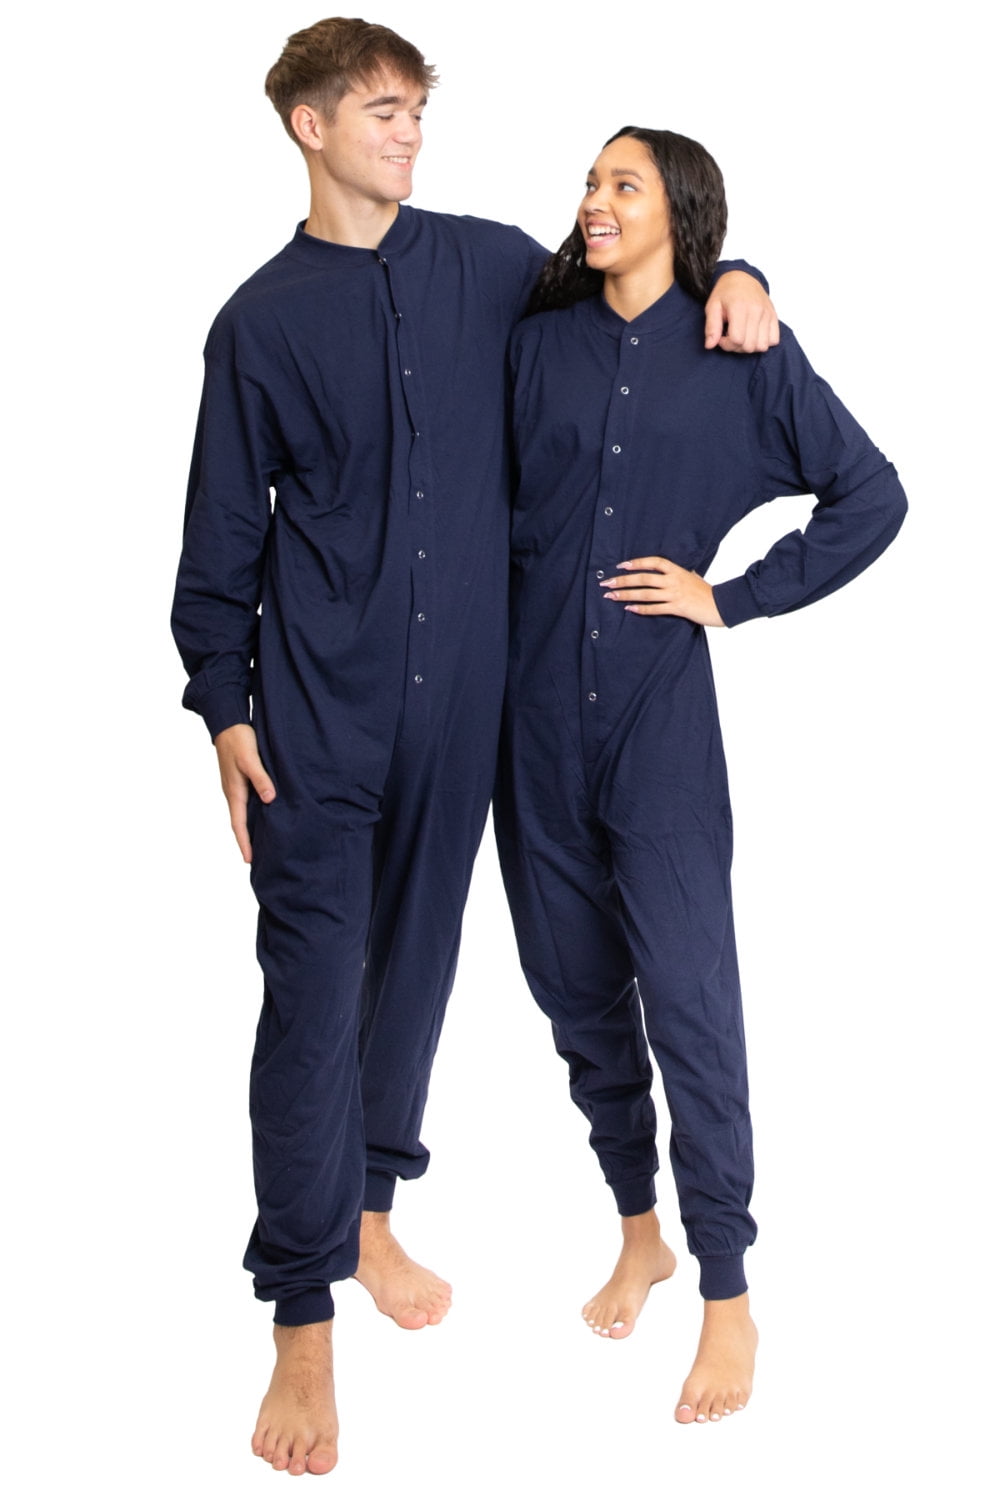 combinatie Aanpassen peddelen Navy Blue Cotton Onesie with Drop Seat Footless Union Suit Pajama for Men  and Women - Walmart.com